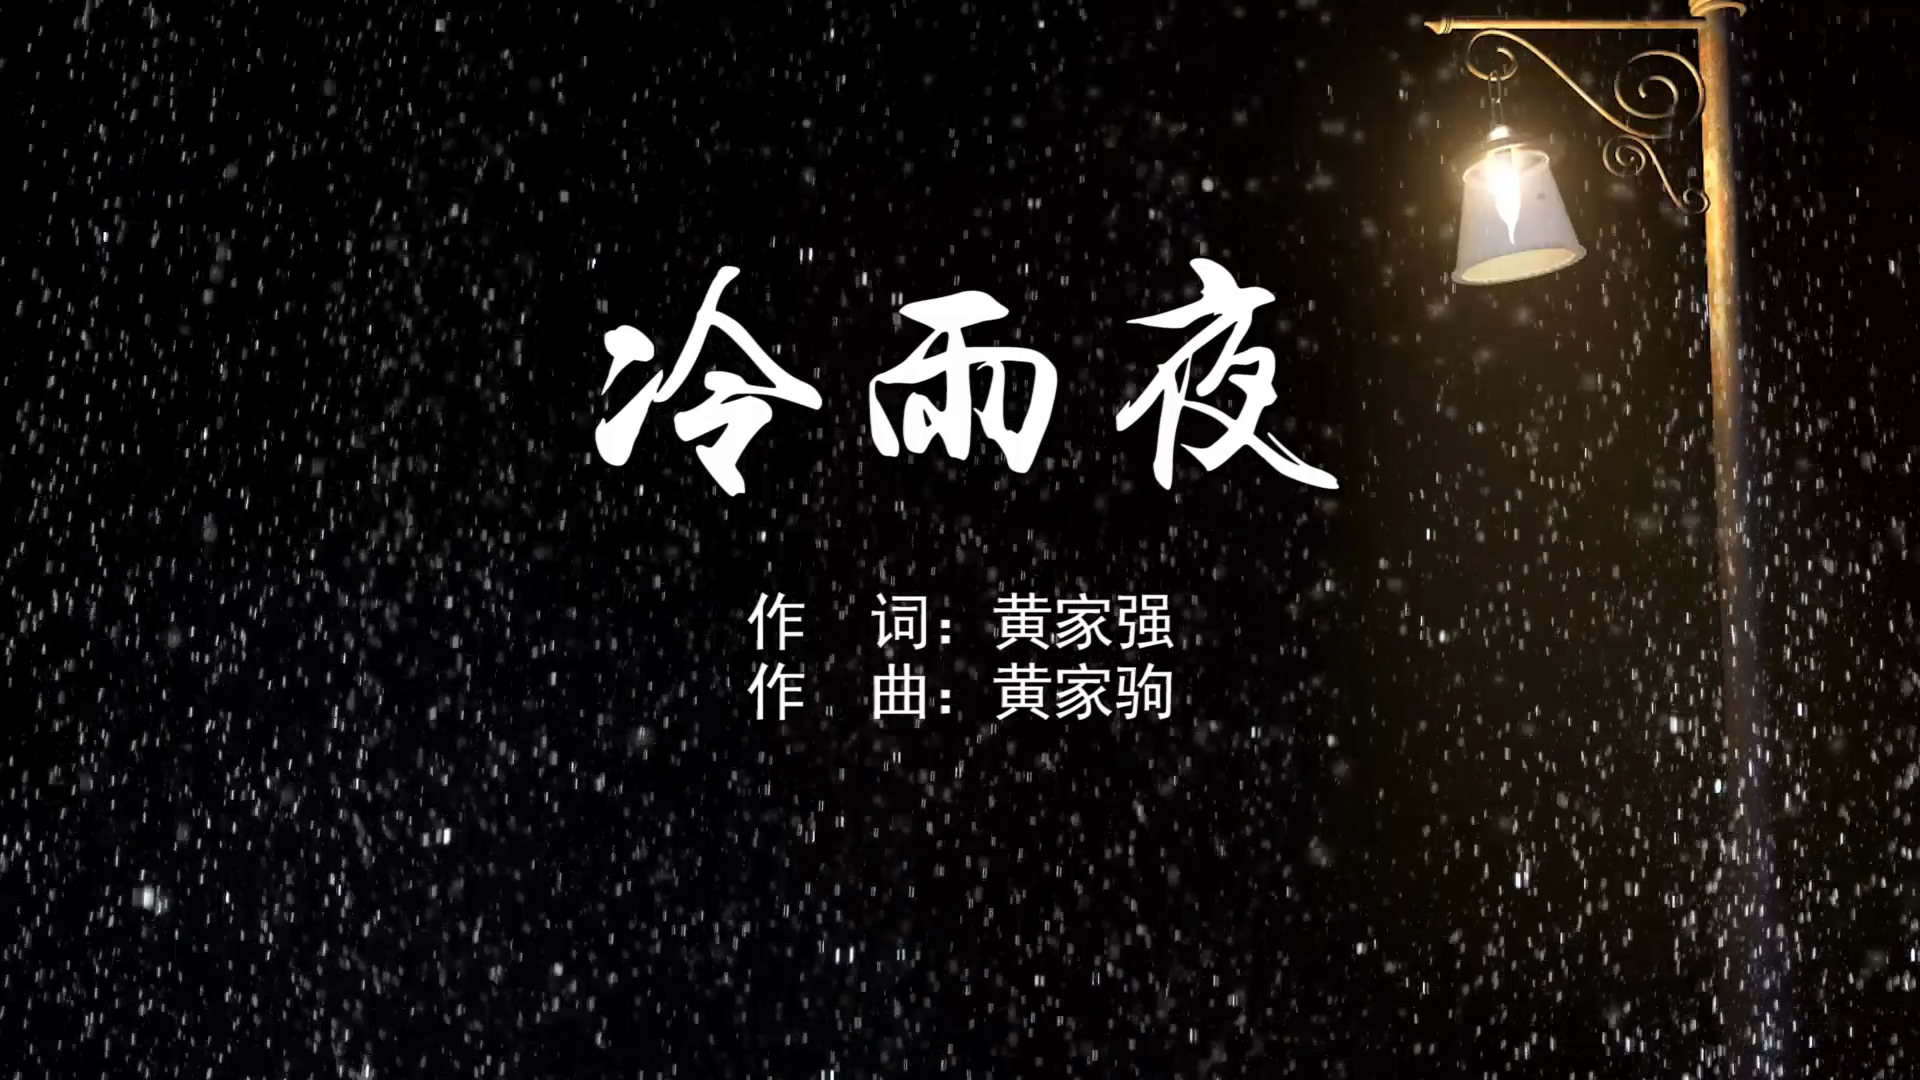 冷雨夜 黄家驹beyondMV字幕配乐伴奏舞台演出LED背景大屏幕视频素材TV